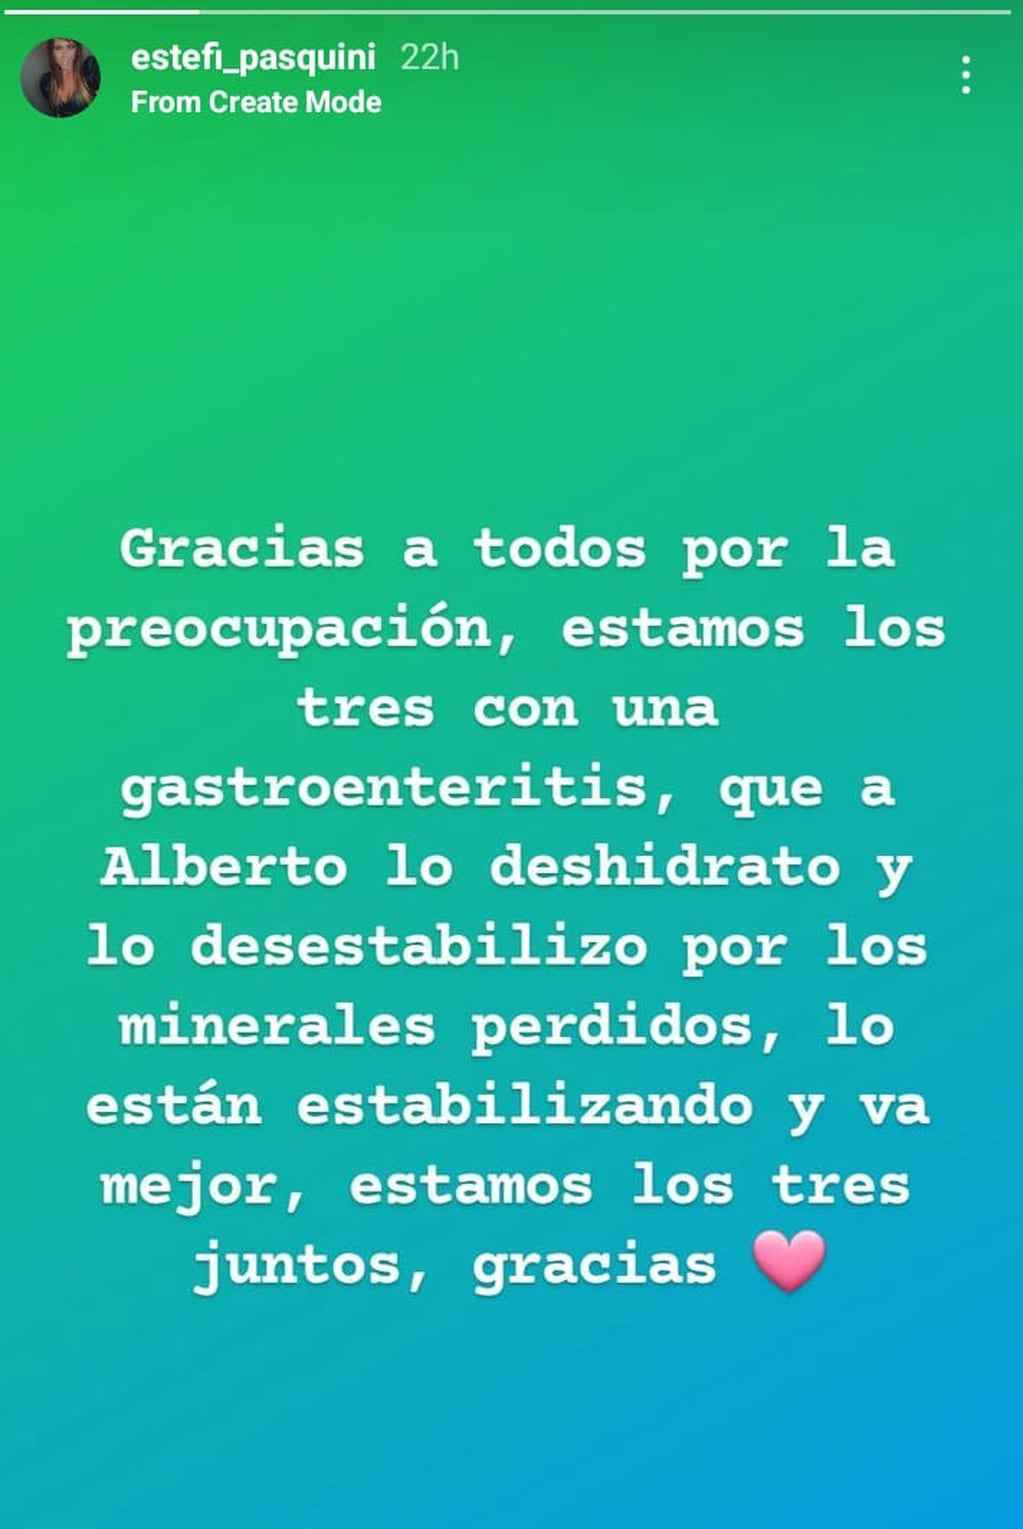 Estefanía Pasquini publicó un breve comunicado en sus redes sociales - Instagram